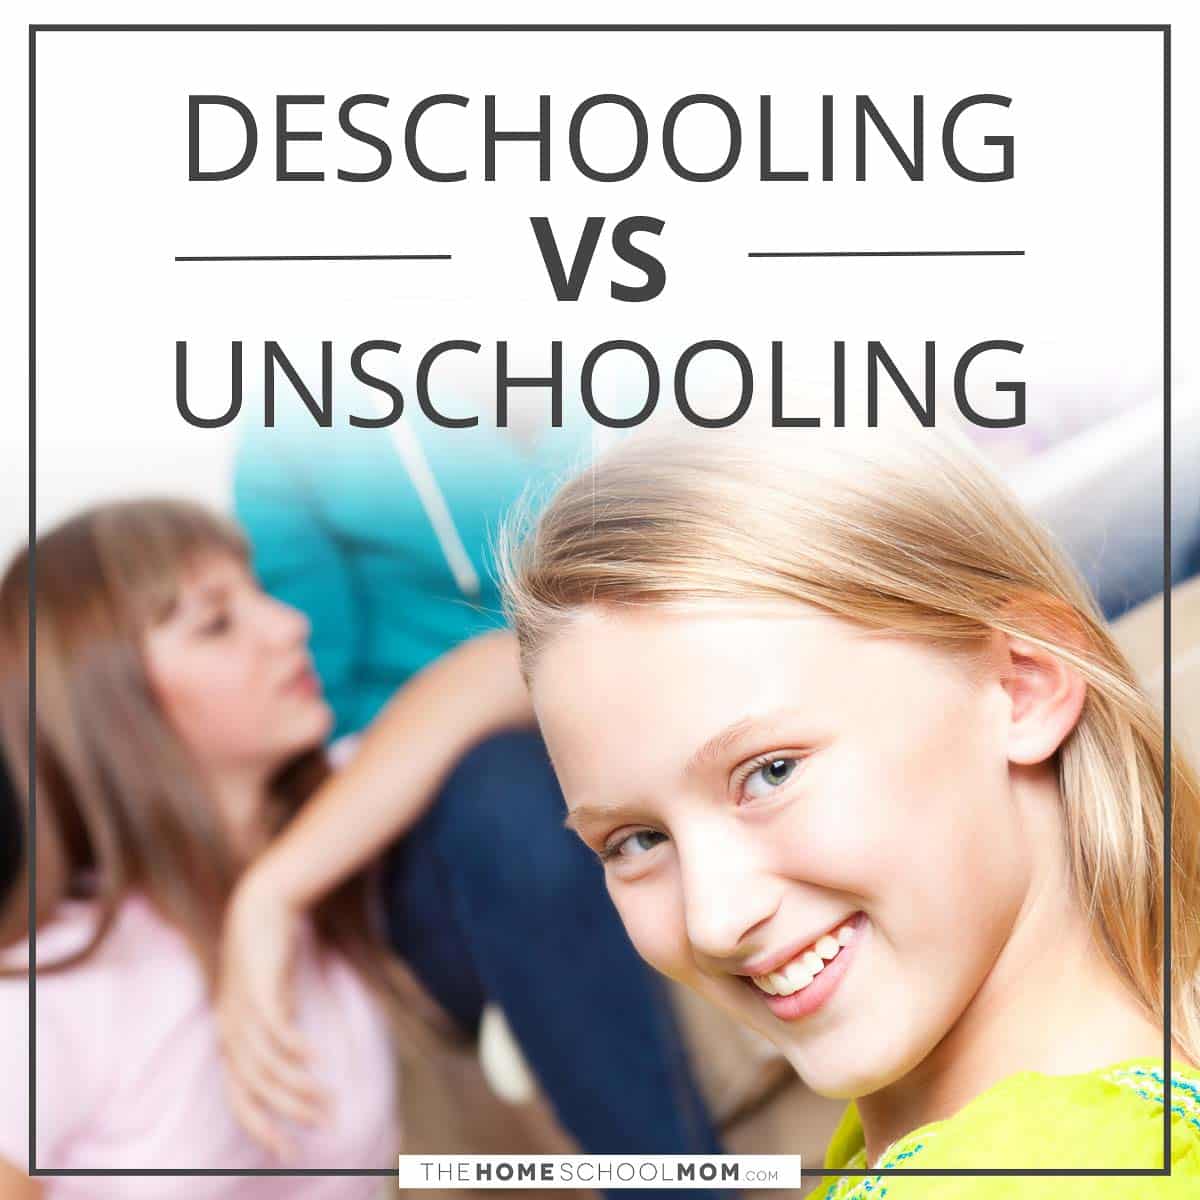 Deschooling vs. unschooling.